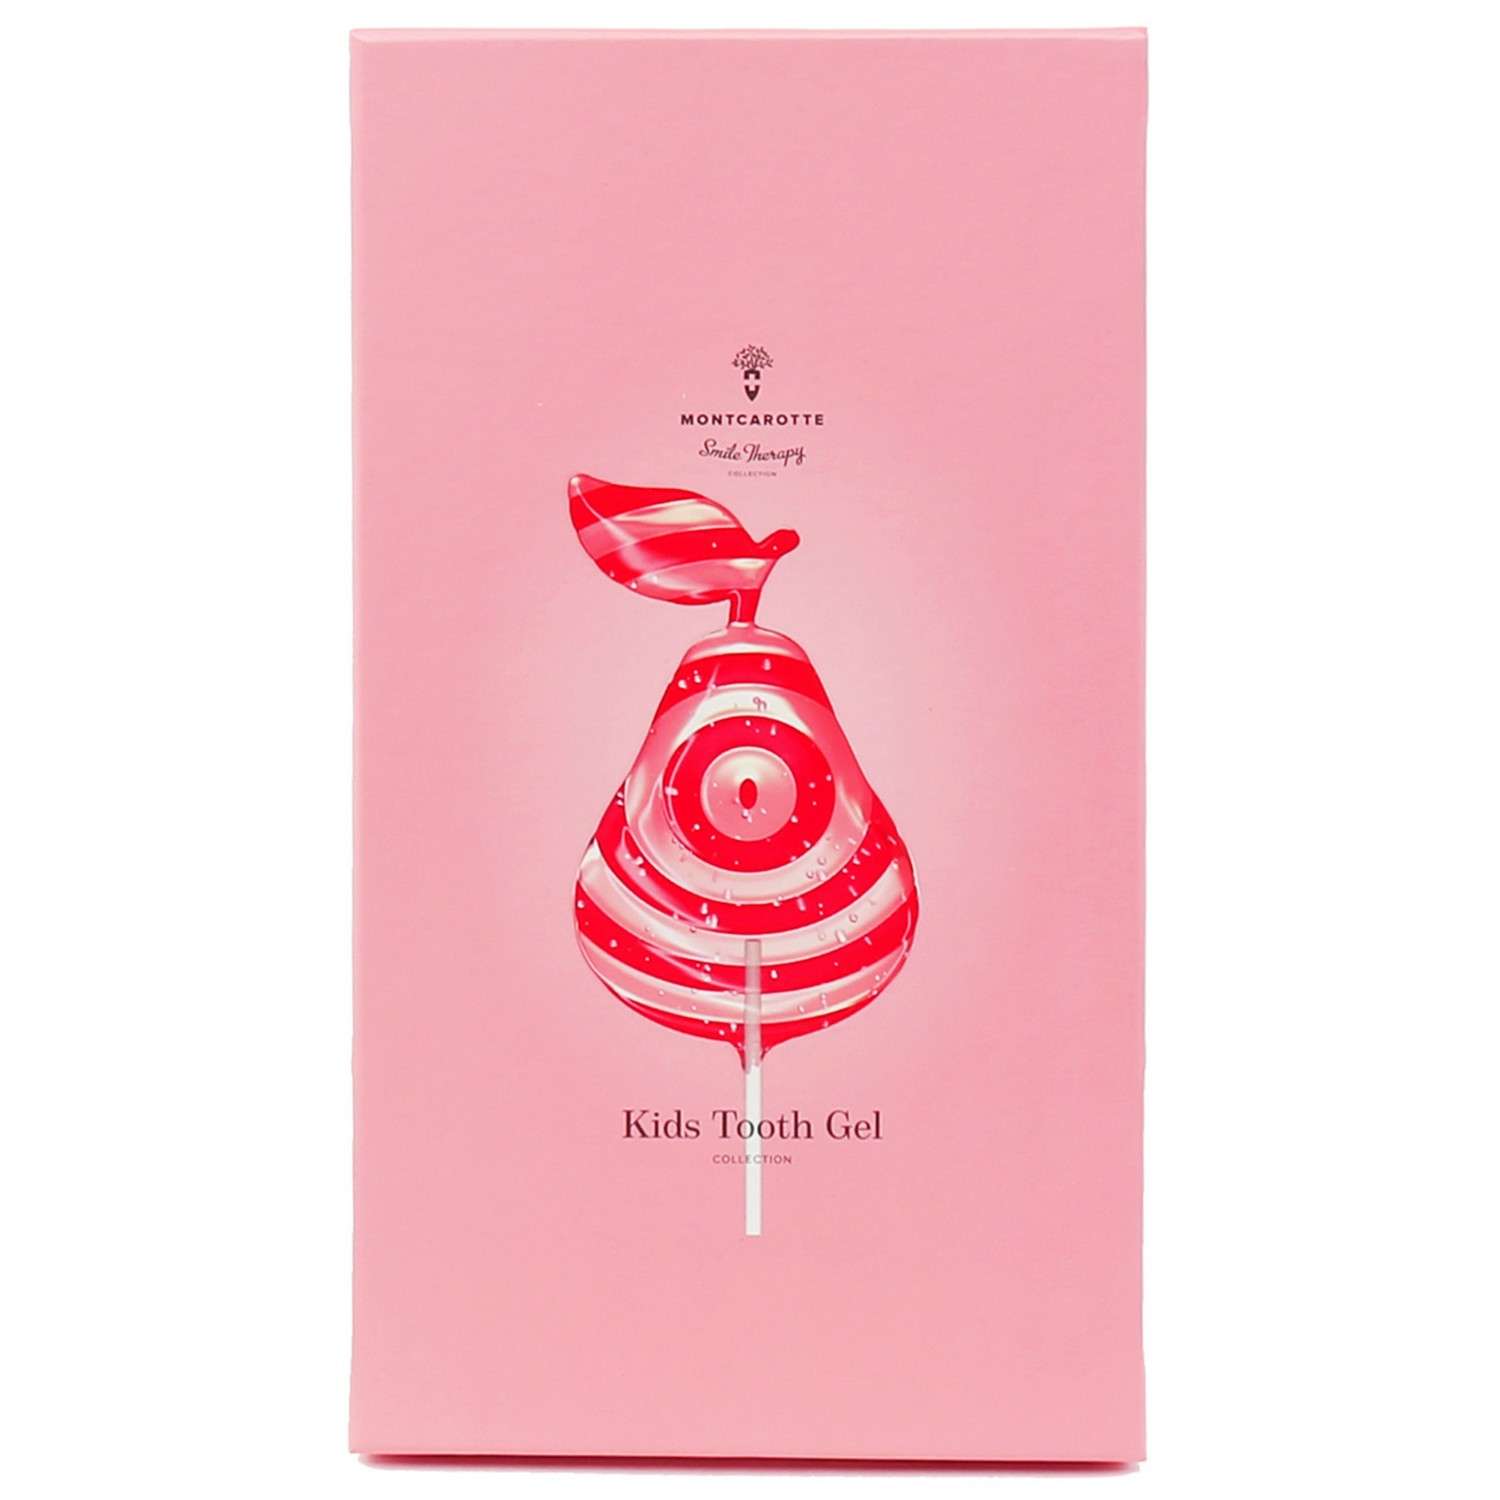 Подарочный набор Montcarotte гелеобразная зубная паста Розовая Груша + Зубная щетка Розовая - фото 4